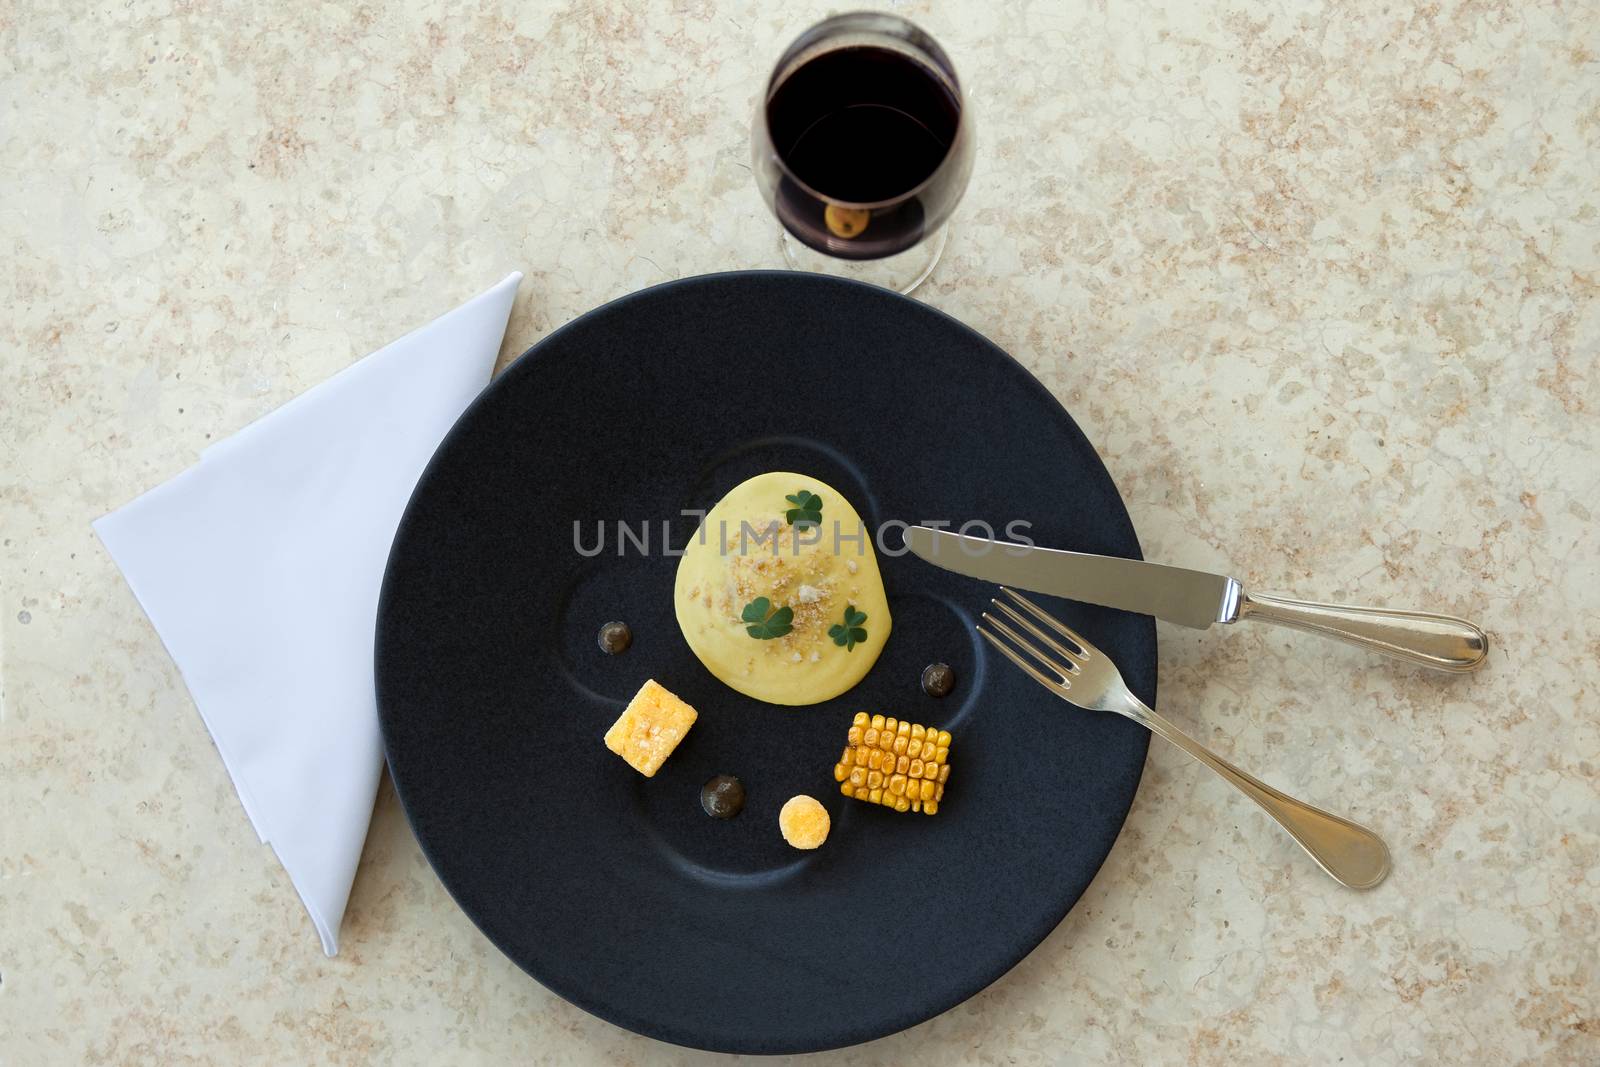 Egg, corn, polenta and black olive on a plate